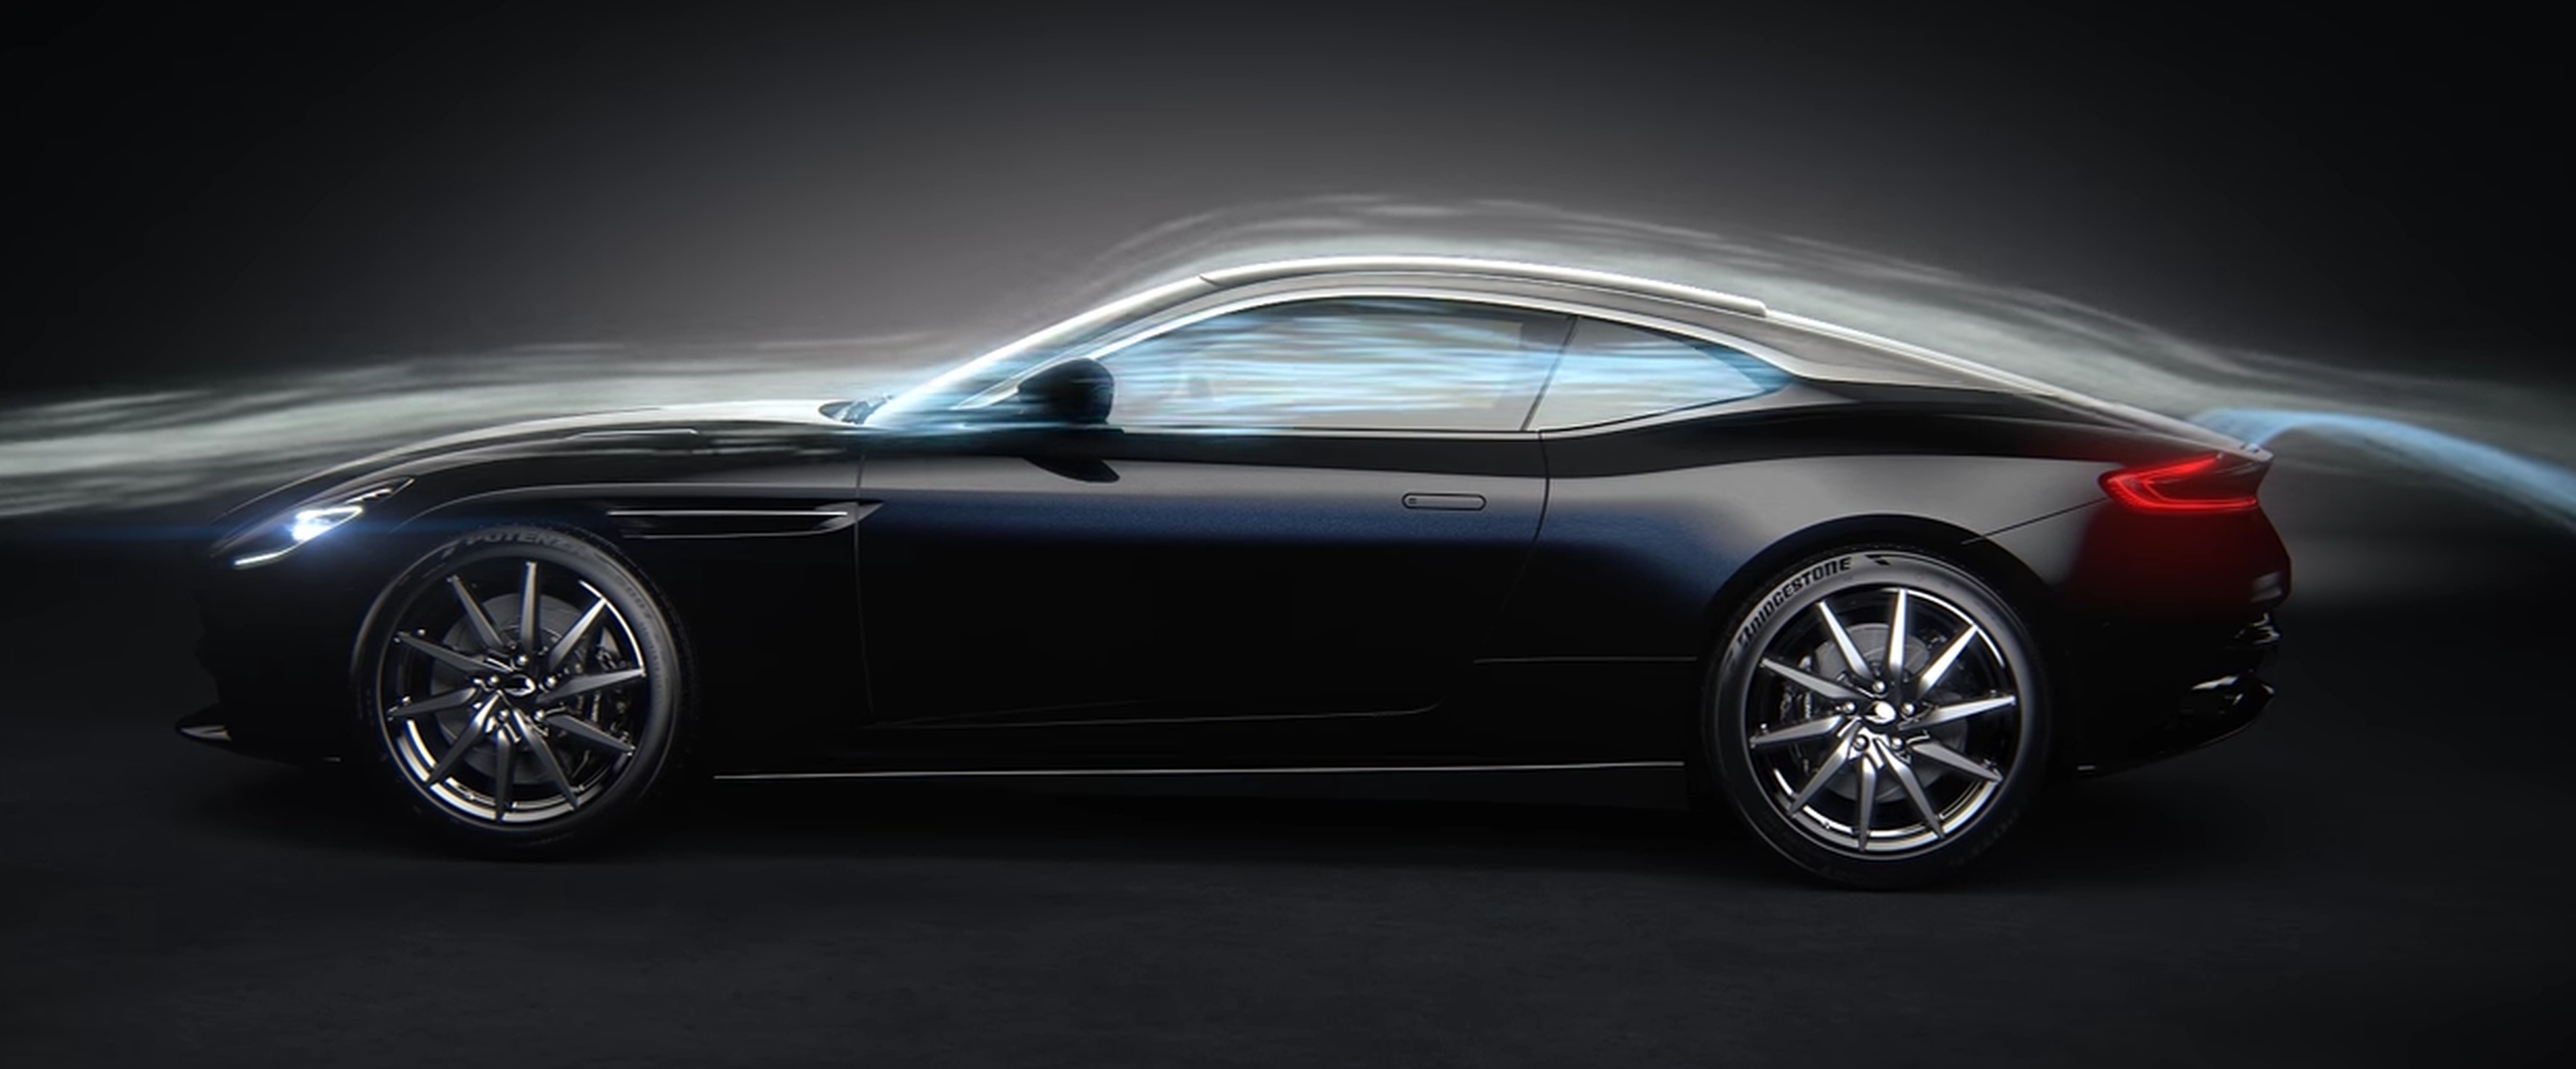 VÍDEO: Así funciona el spoiler escondido del Aston Martin DB11